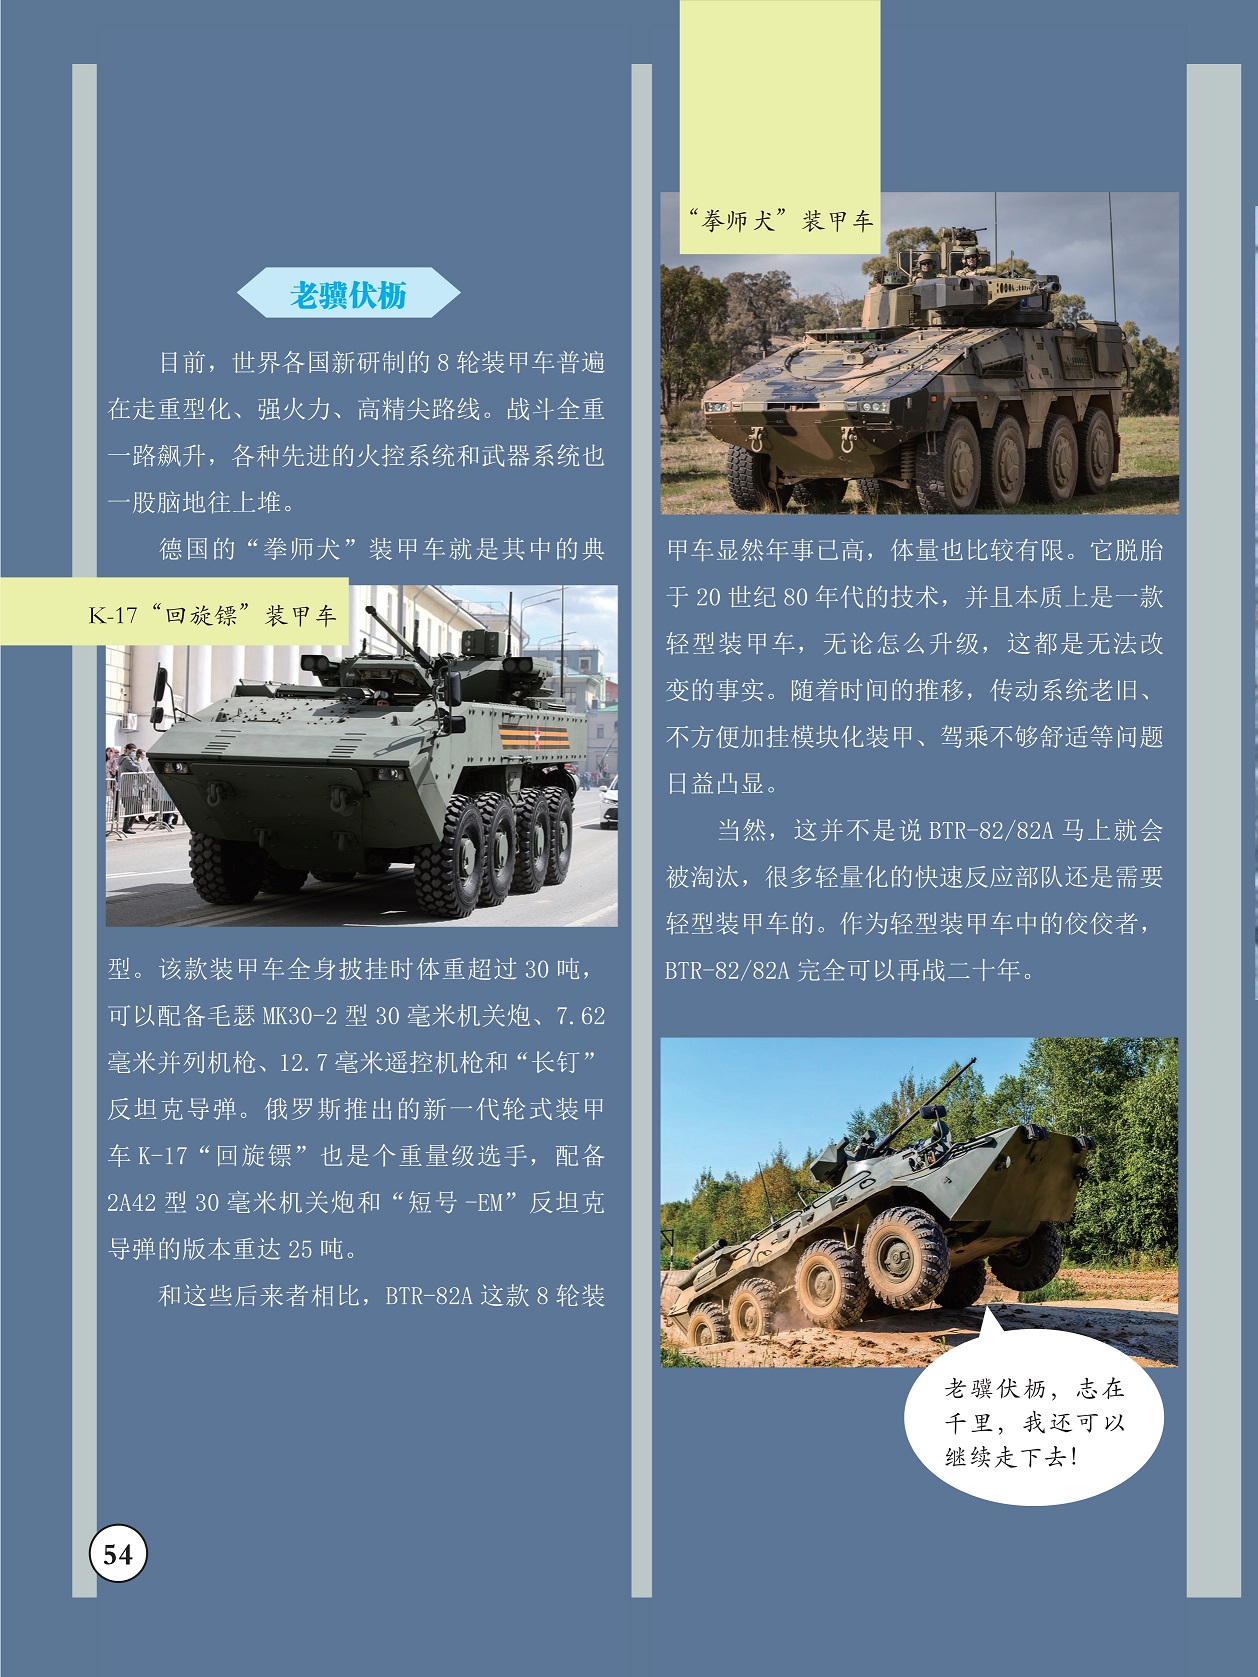 BTR-82A本质上是一款轻型装甲车,轻型装甲车中的佼佼者